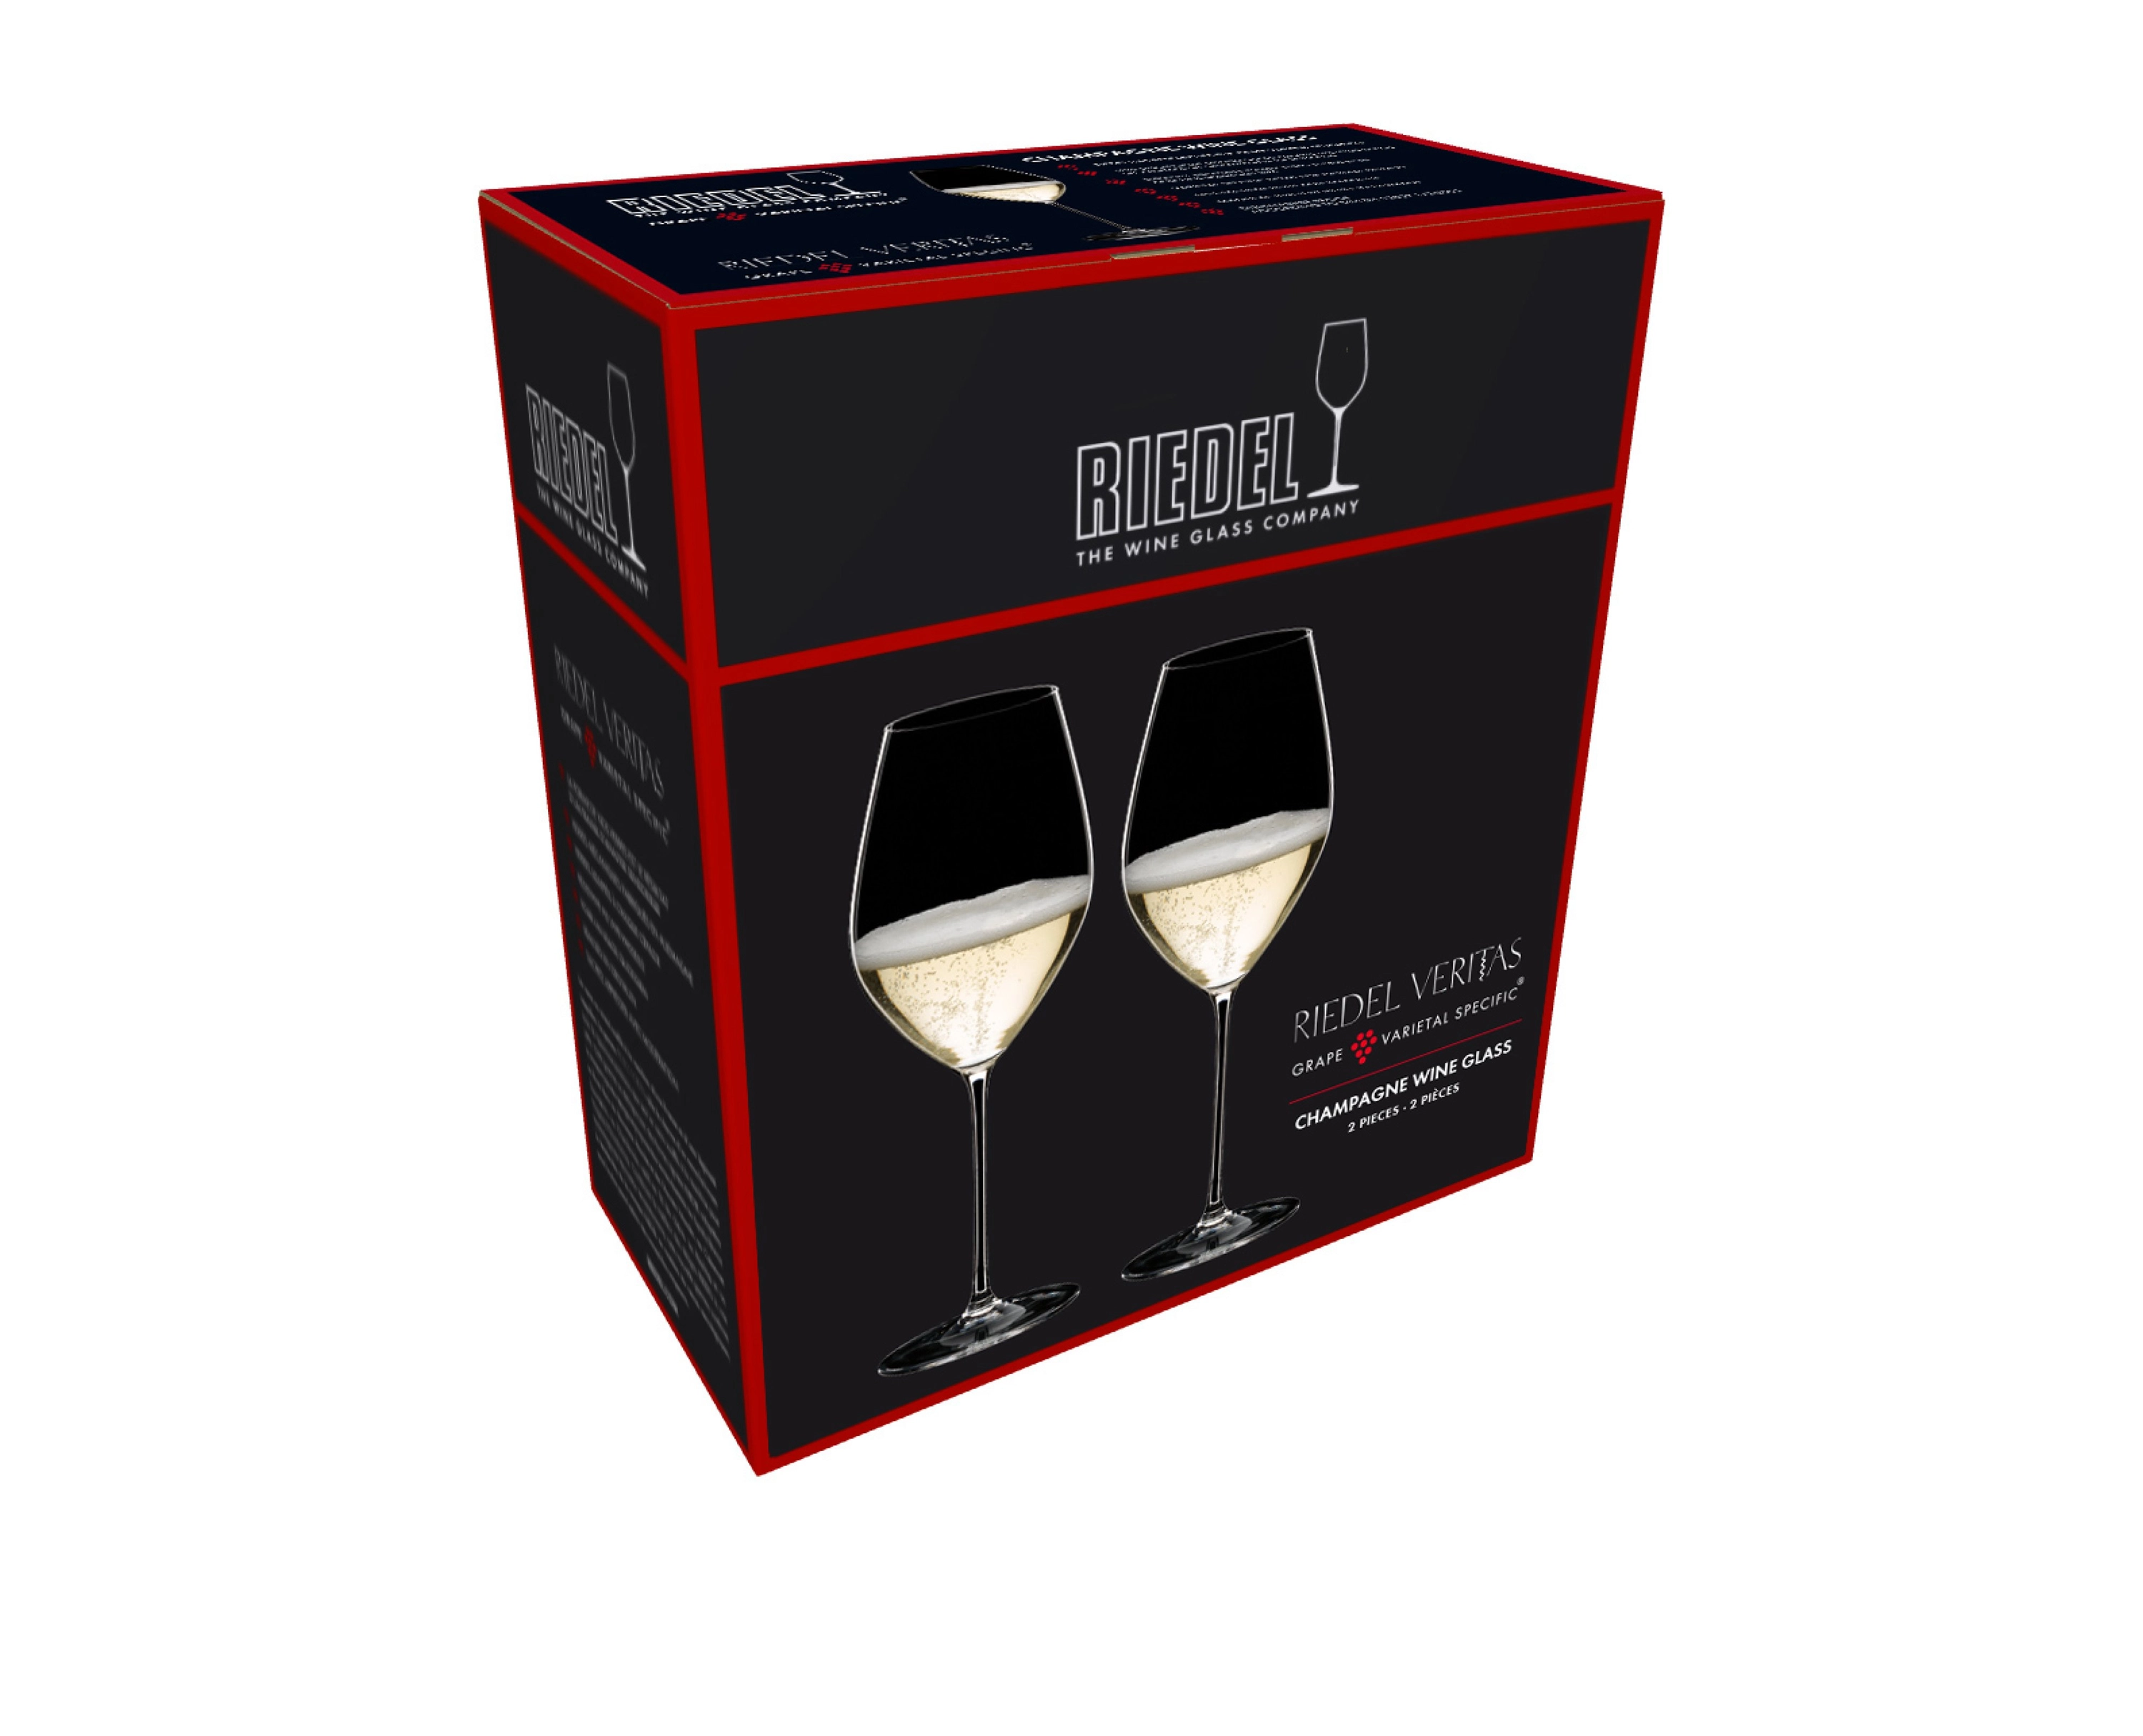 Riedel Veritas Champagnerglas, Set mit 2 Gläsern